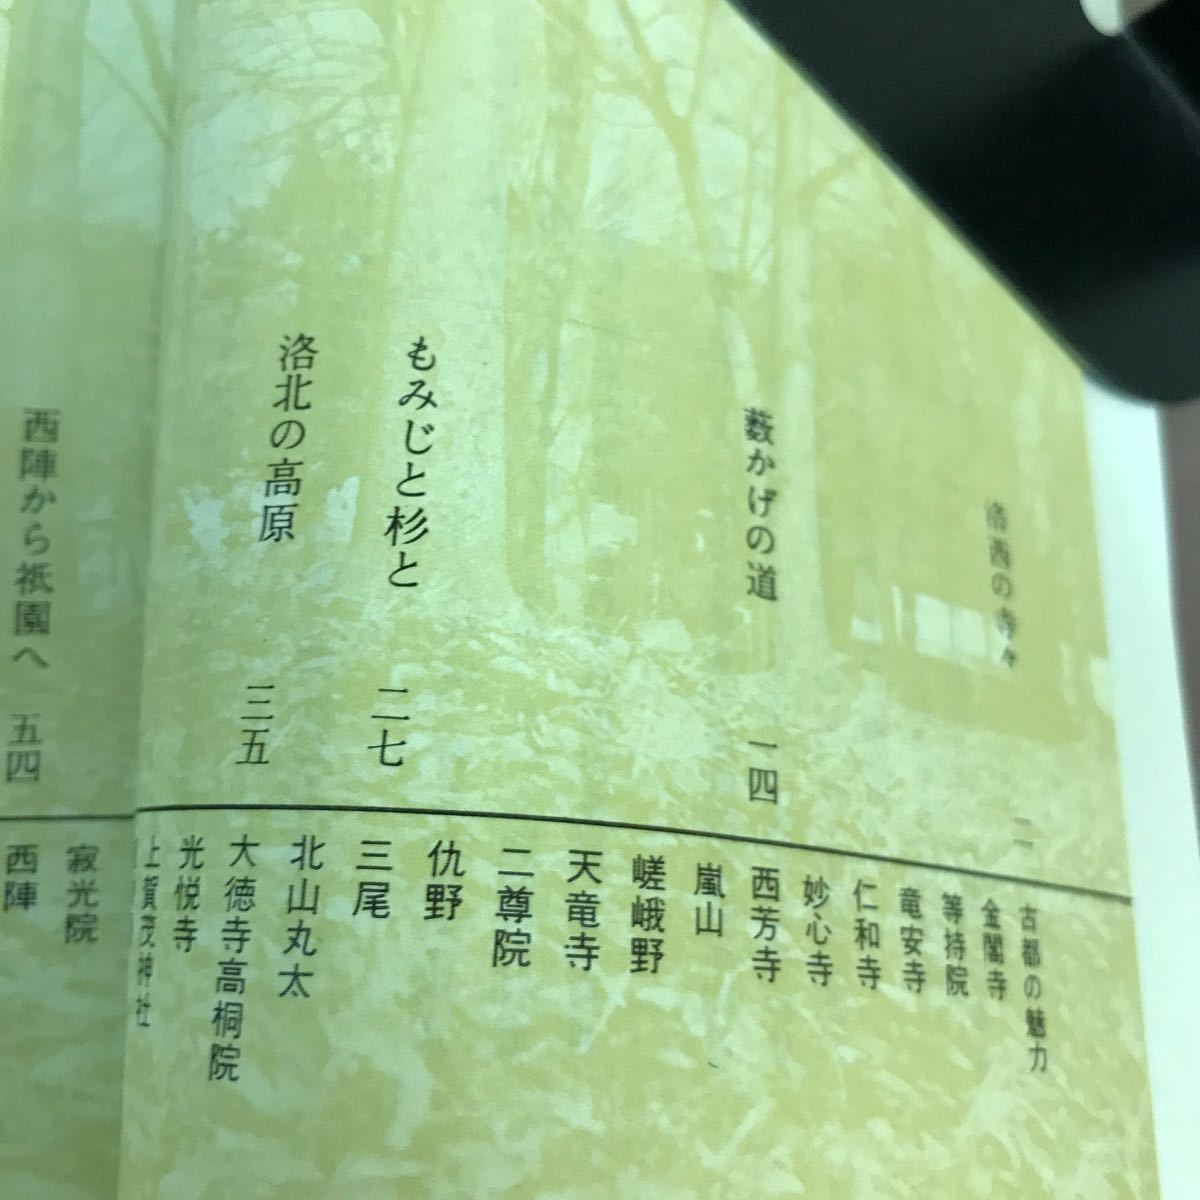 D10-175 京都-文学散歩- カラーブックス 水ヨレあり_画像3